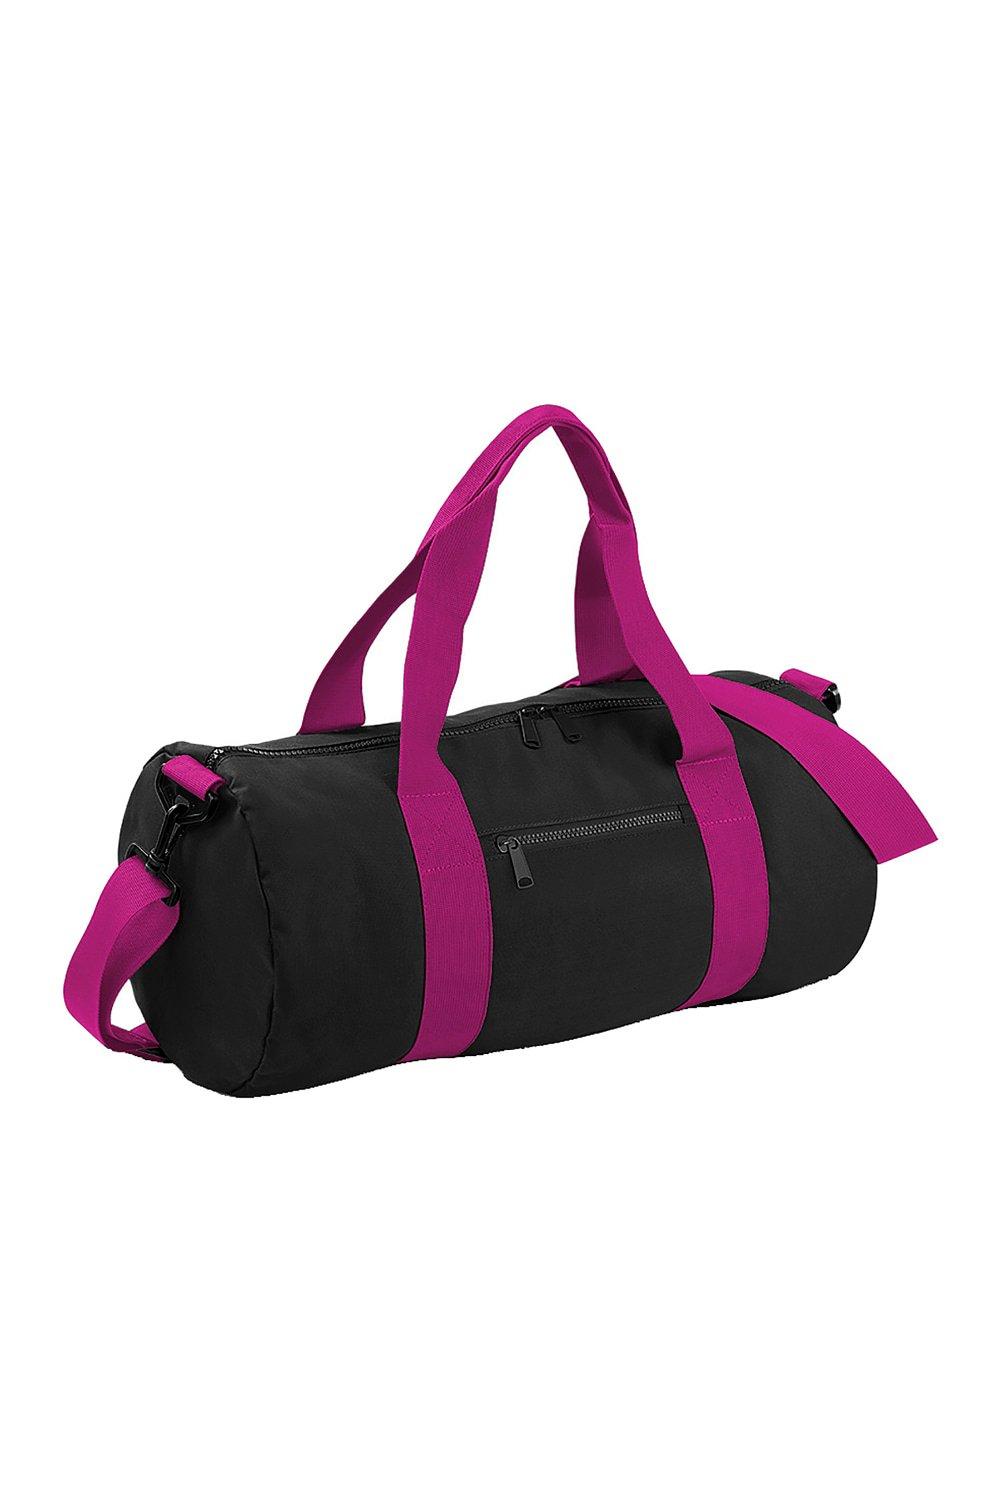 Обычная университетская бочка/спортивная сумка (20 литров) Bagbase, черный cумка на пояс тачки 25 x 6 x 13 см отдел на молнии без подклада disney в наборе 1шт